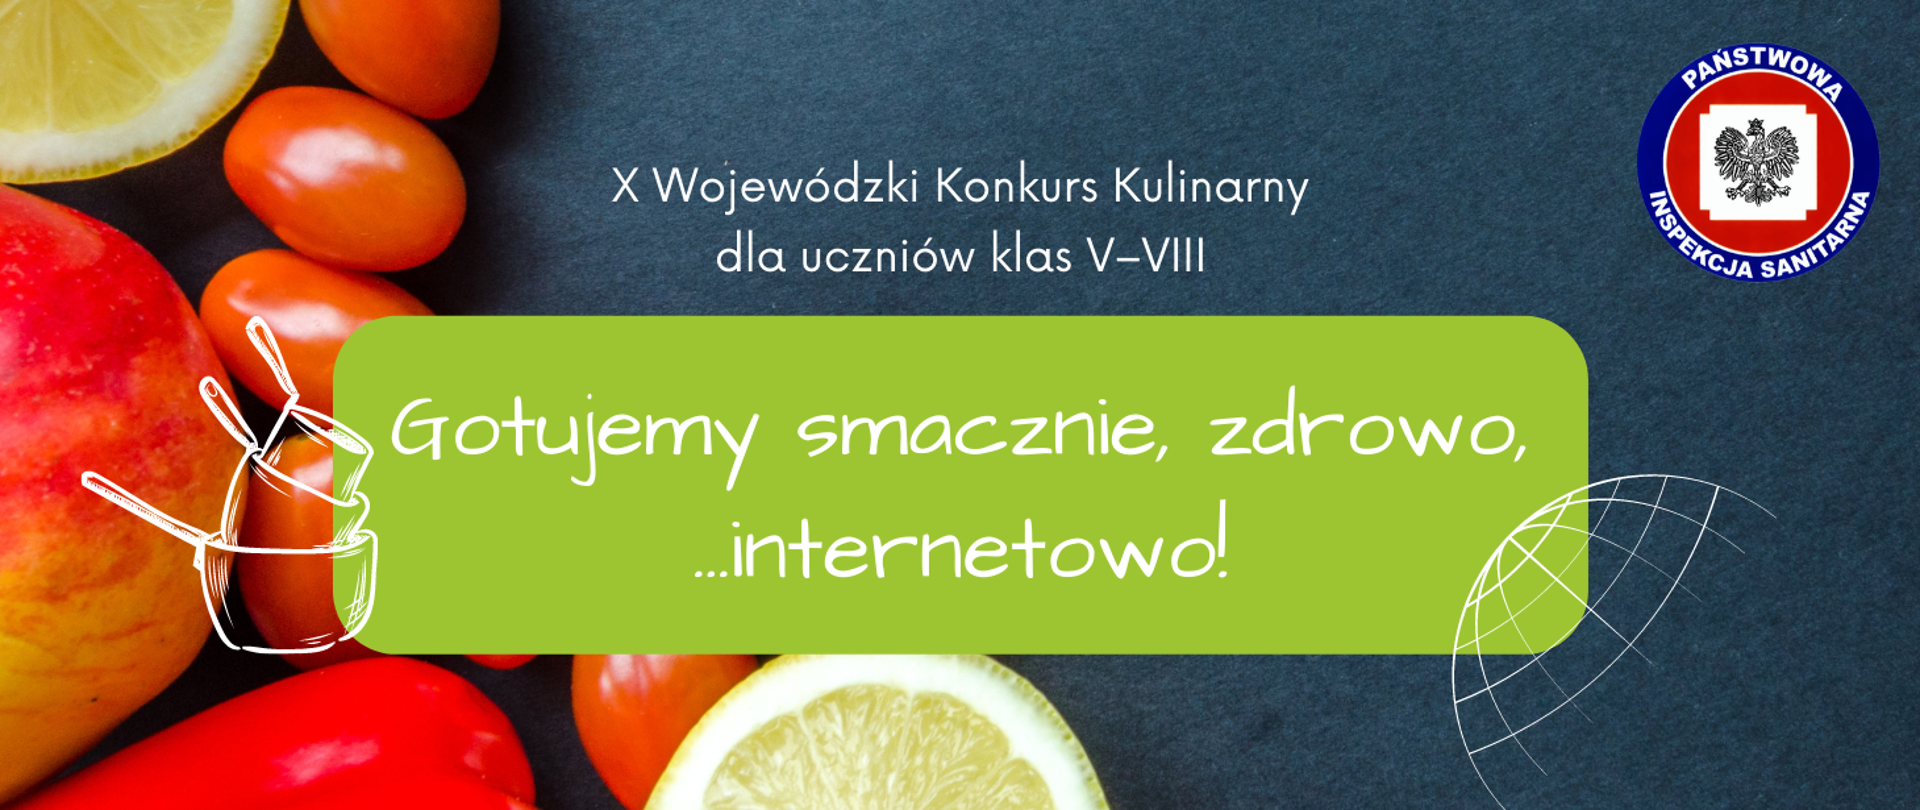 X Wojewódzki Konkurs Kulinarny